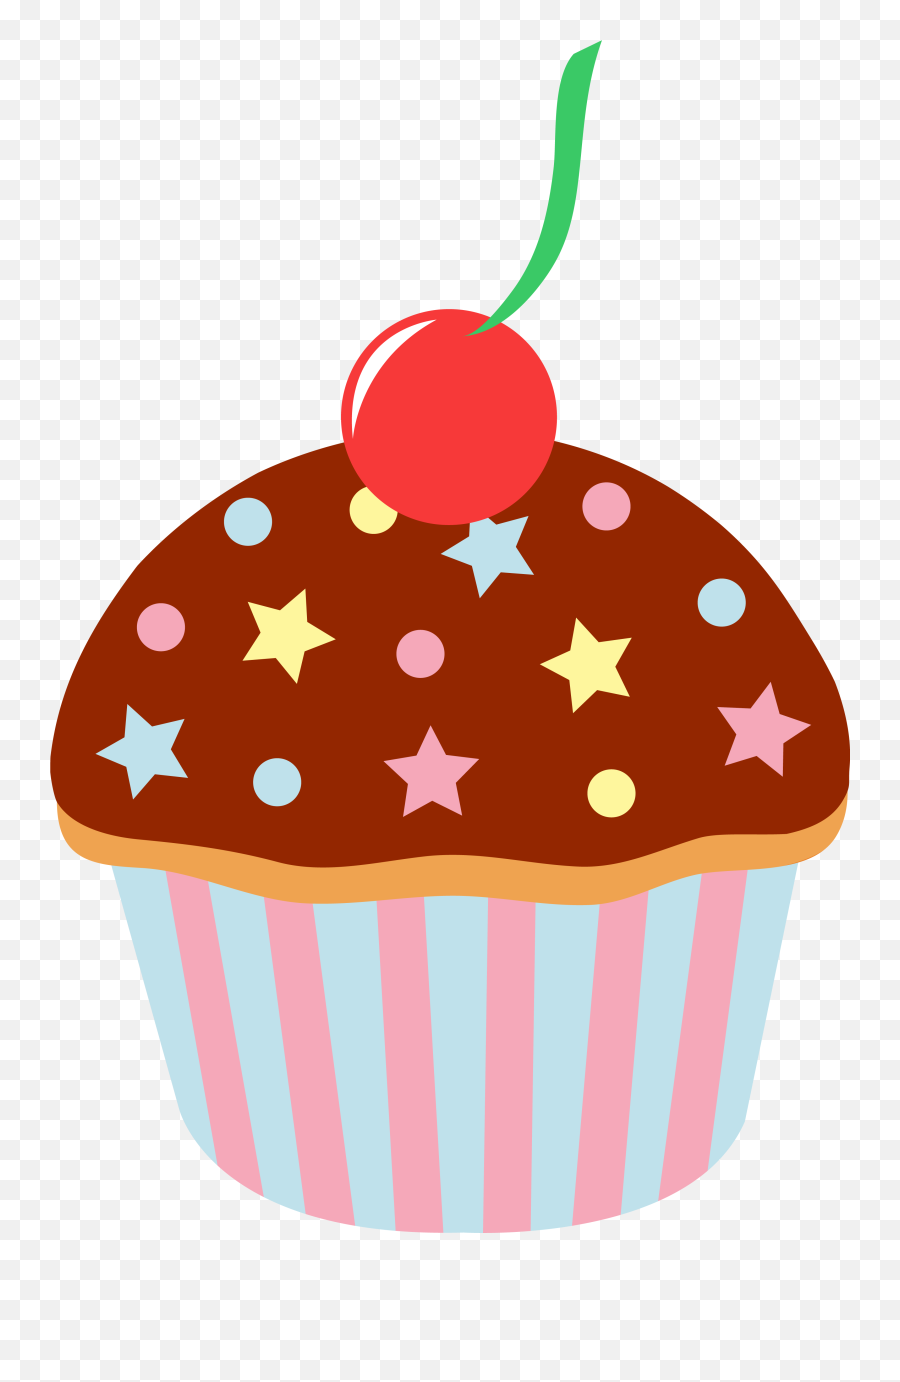 Cupcake Clipart - Cupcake Cartoon Transparent Background Png,Cupcake Png